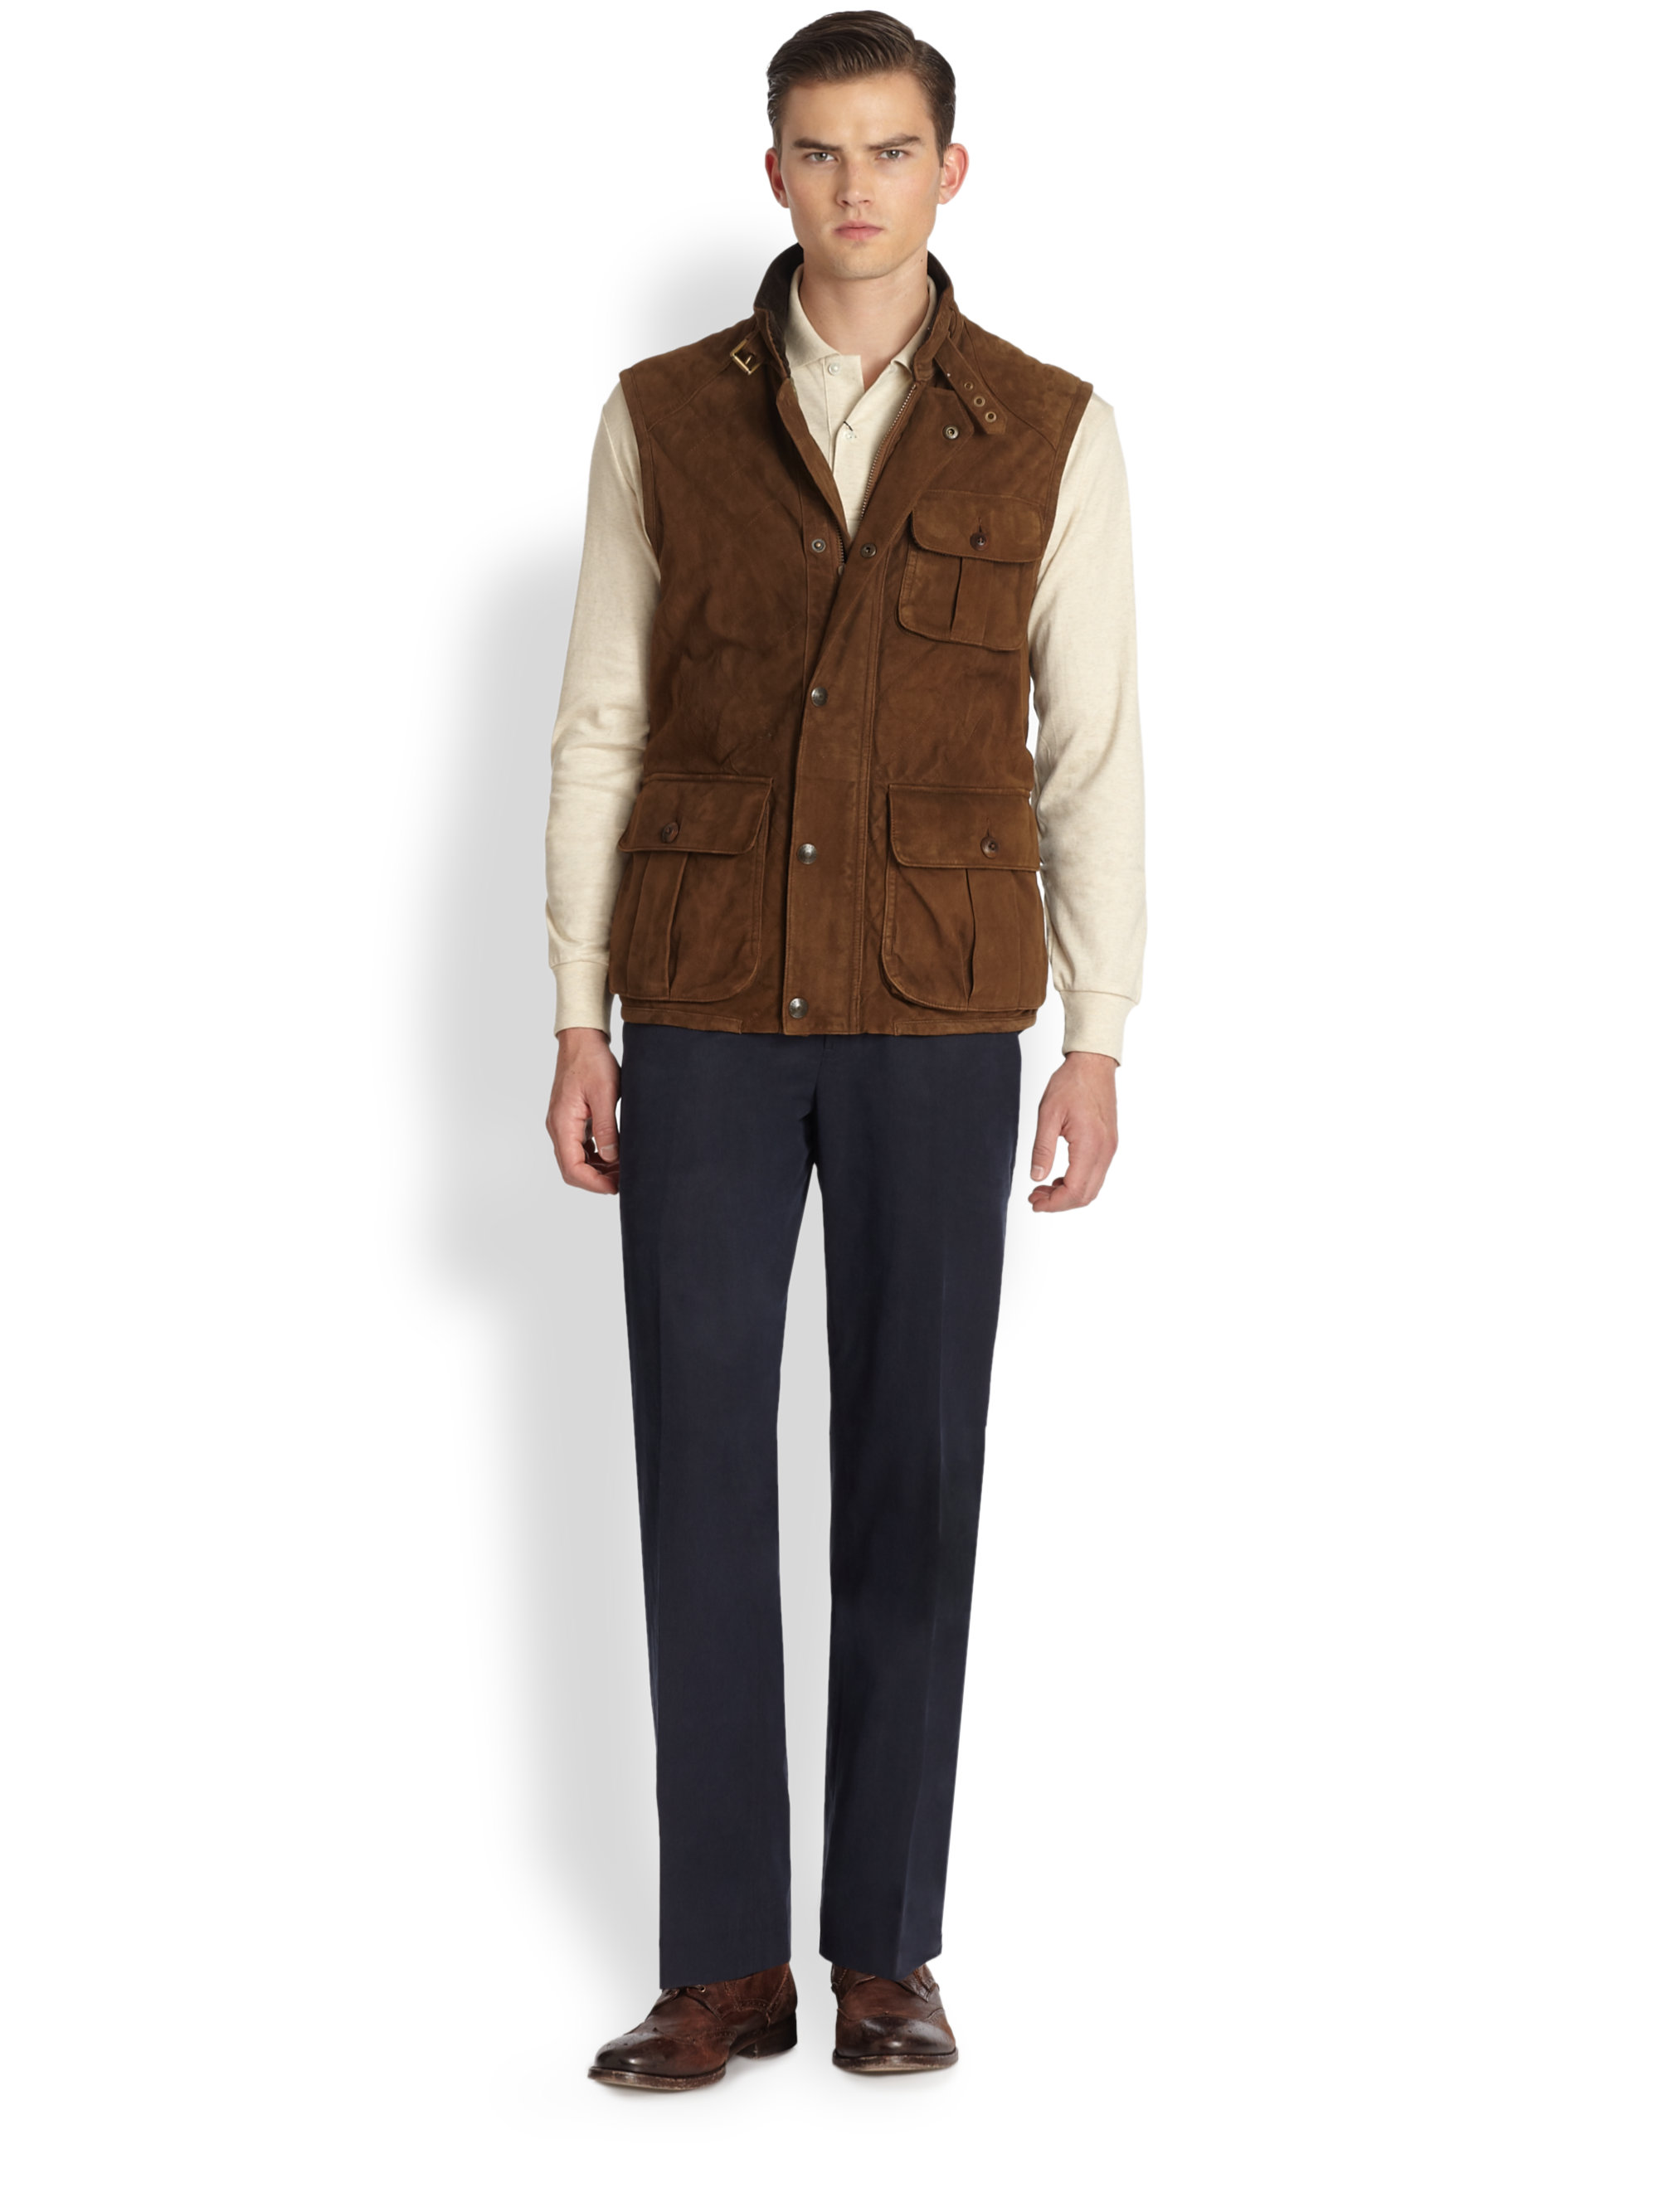 Polo Ralph Lauren Suede Grindlay Vest in Dark Brown (Brown) for Men - Lyst